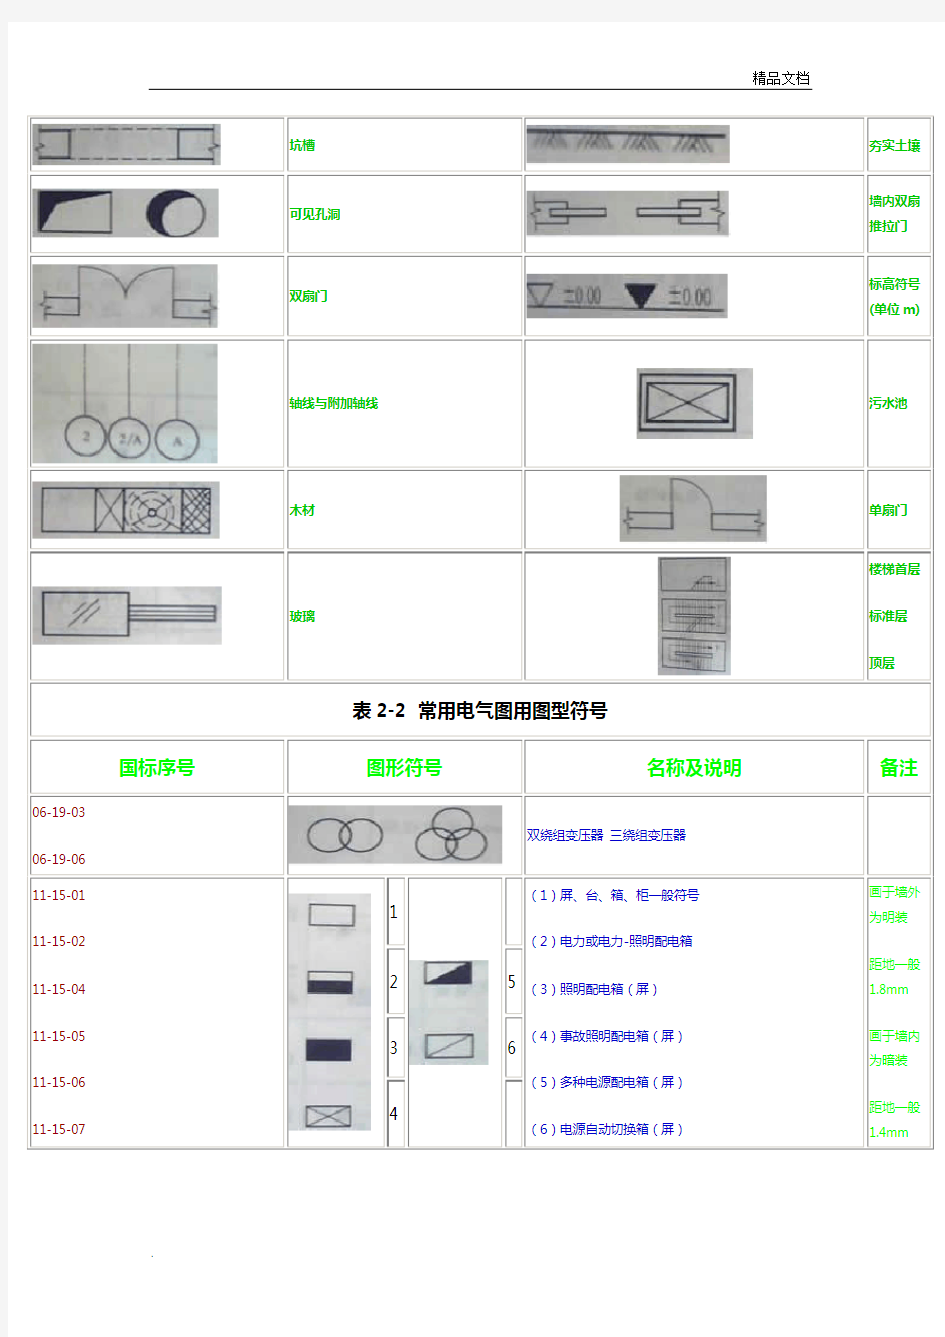 电气工程图例符号及电气工程文字符号